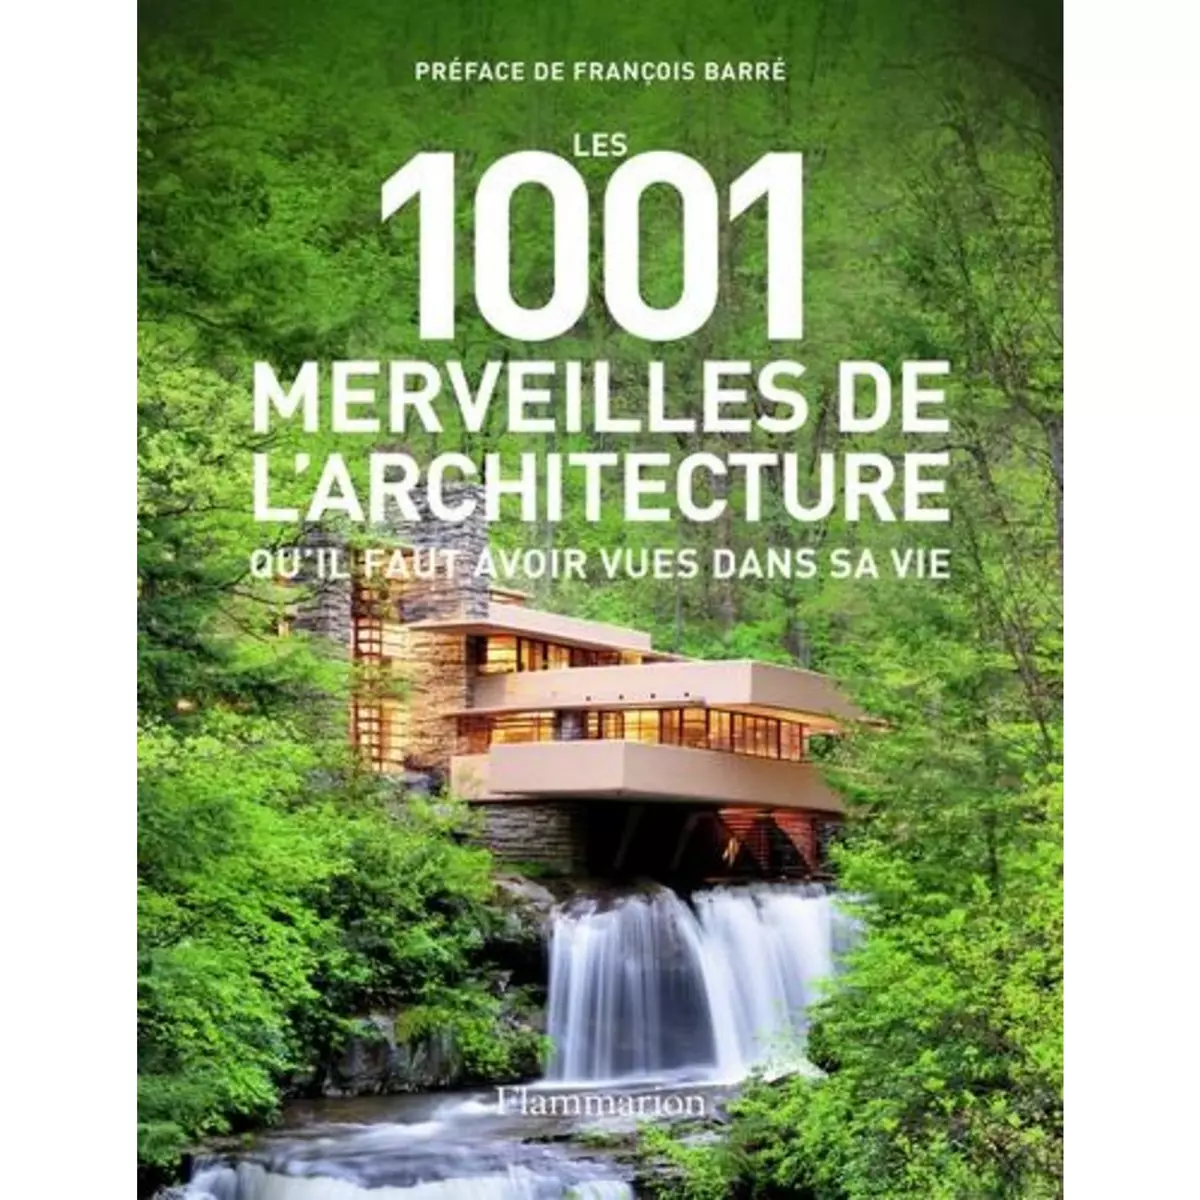  LES 1001 MERVEILLES DE L'ARCHITECTURE QU'IL FAUT AVOIR VUES DANS SA VIE, Irving Mark